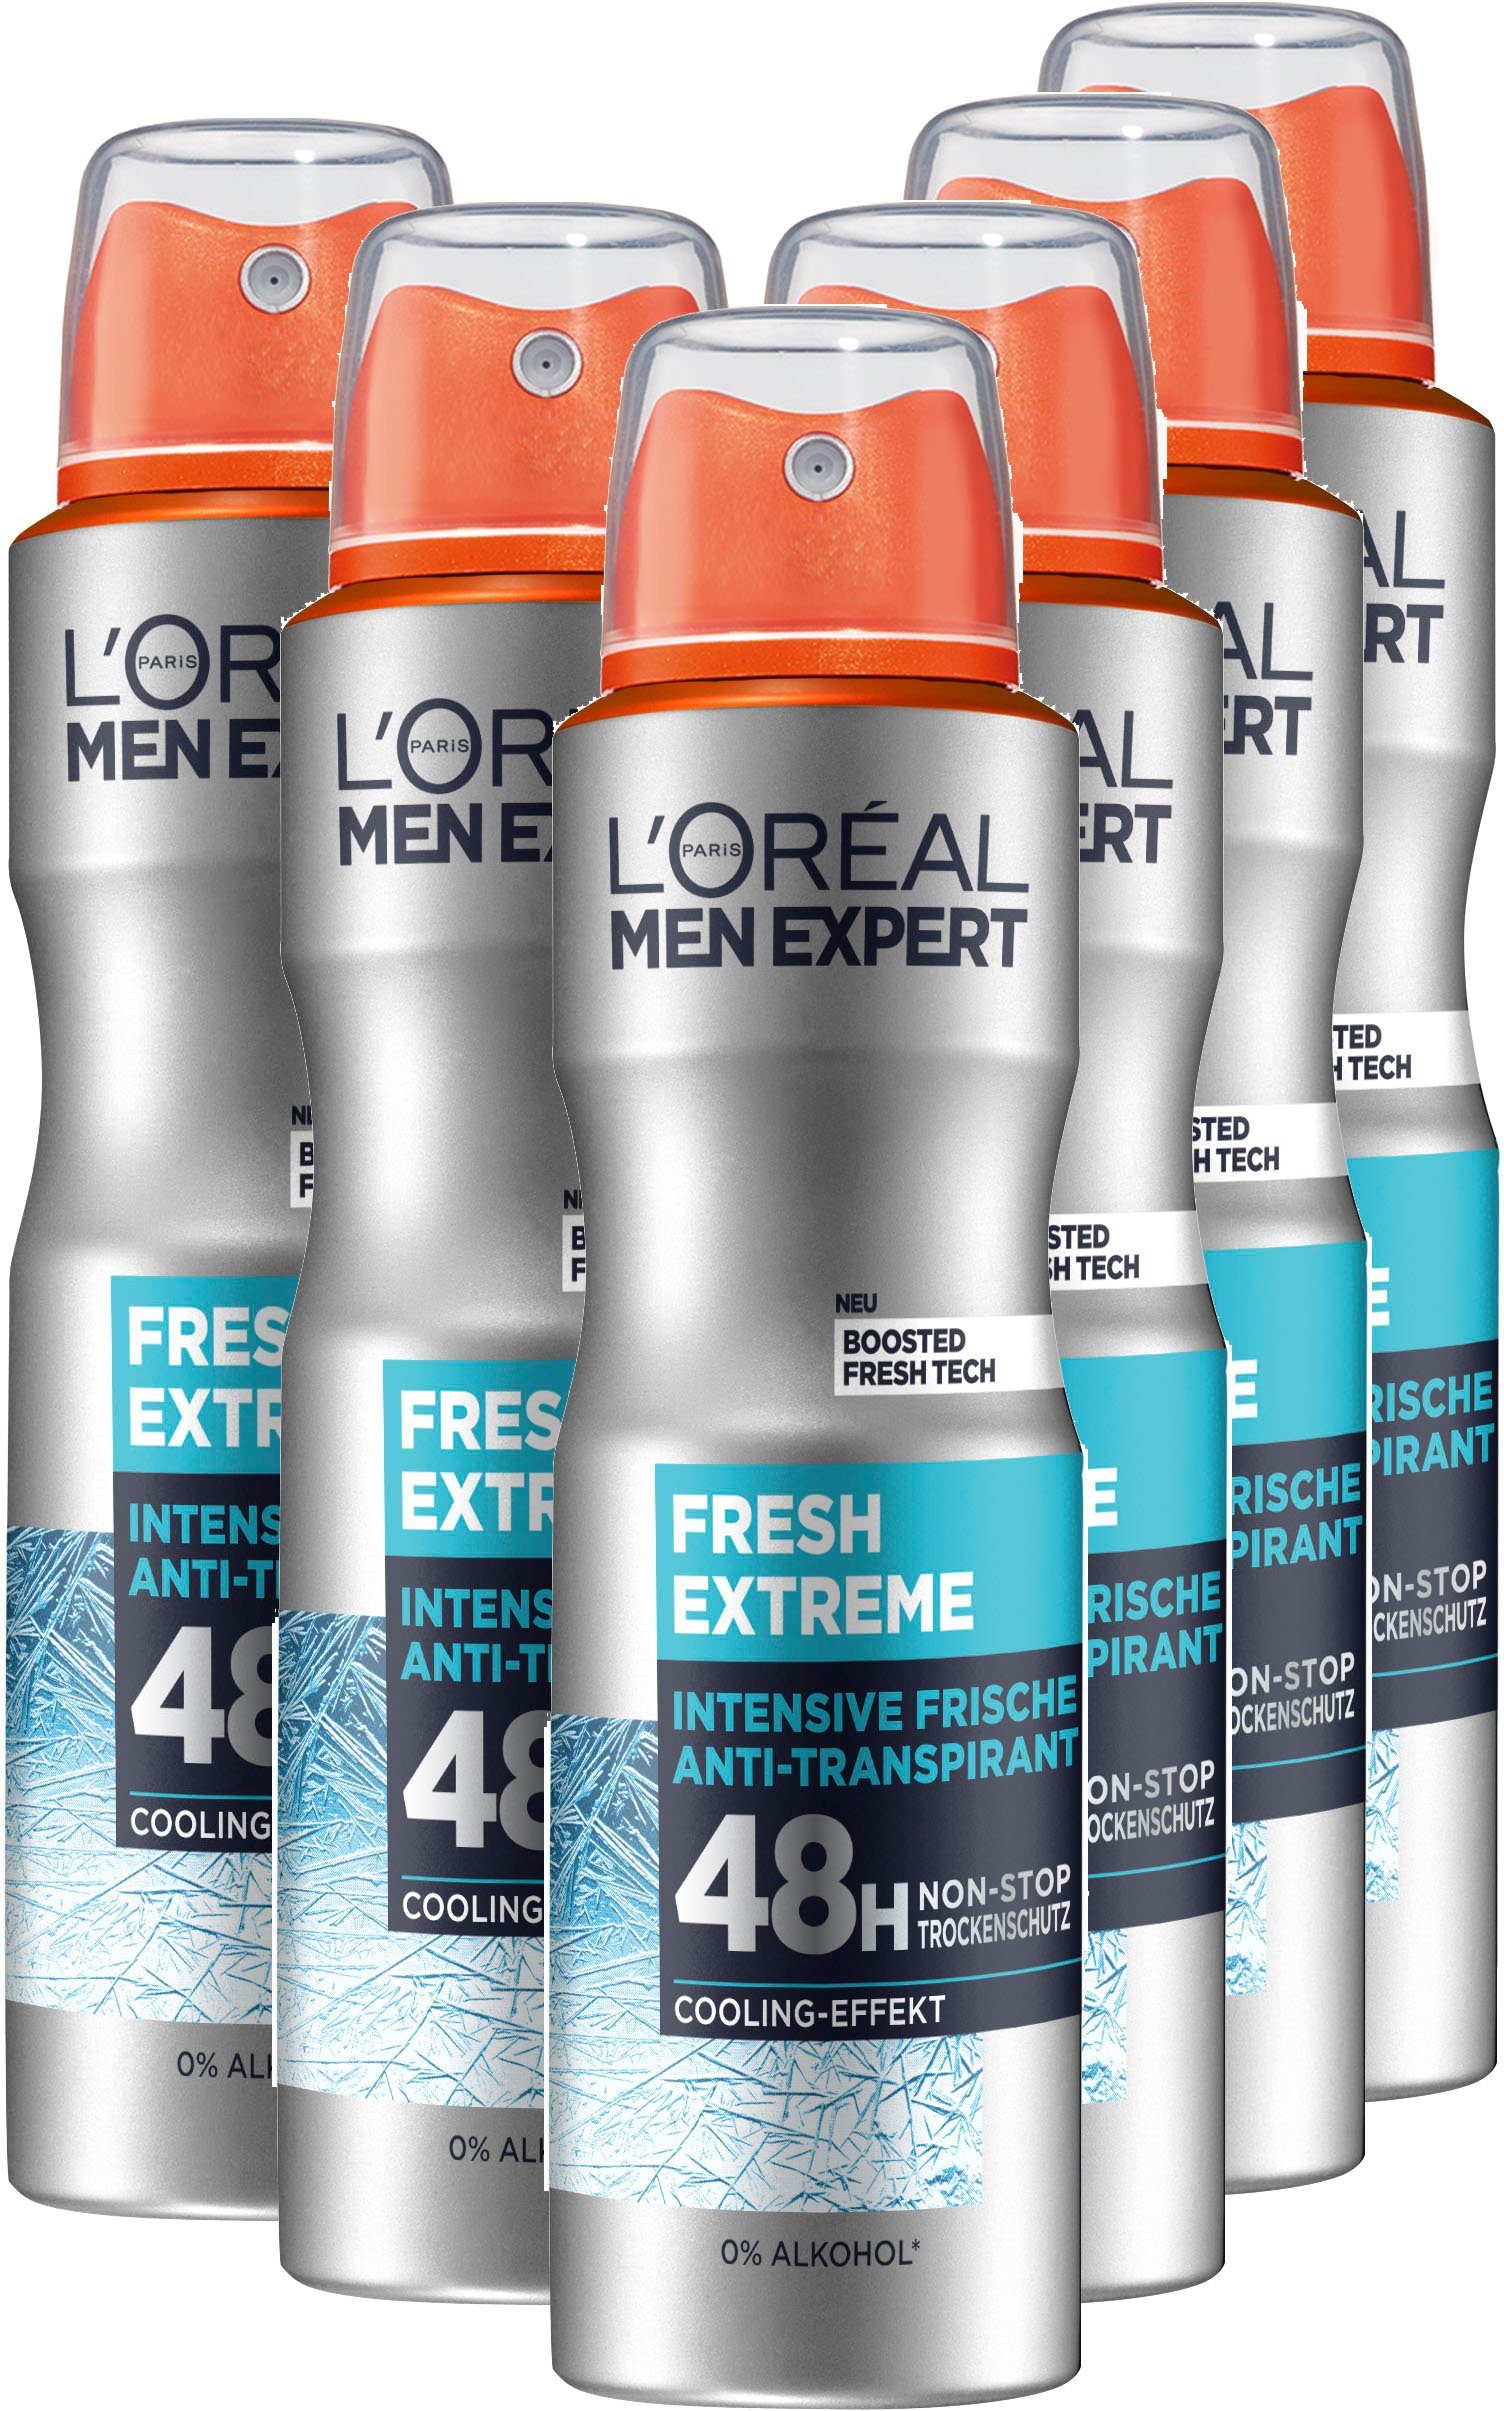 L'ORÉAL PARIS MEN Spray Extreme, Deo EXPERT 6-tlg. Deo-Spray Fresh Packung